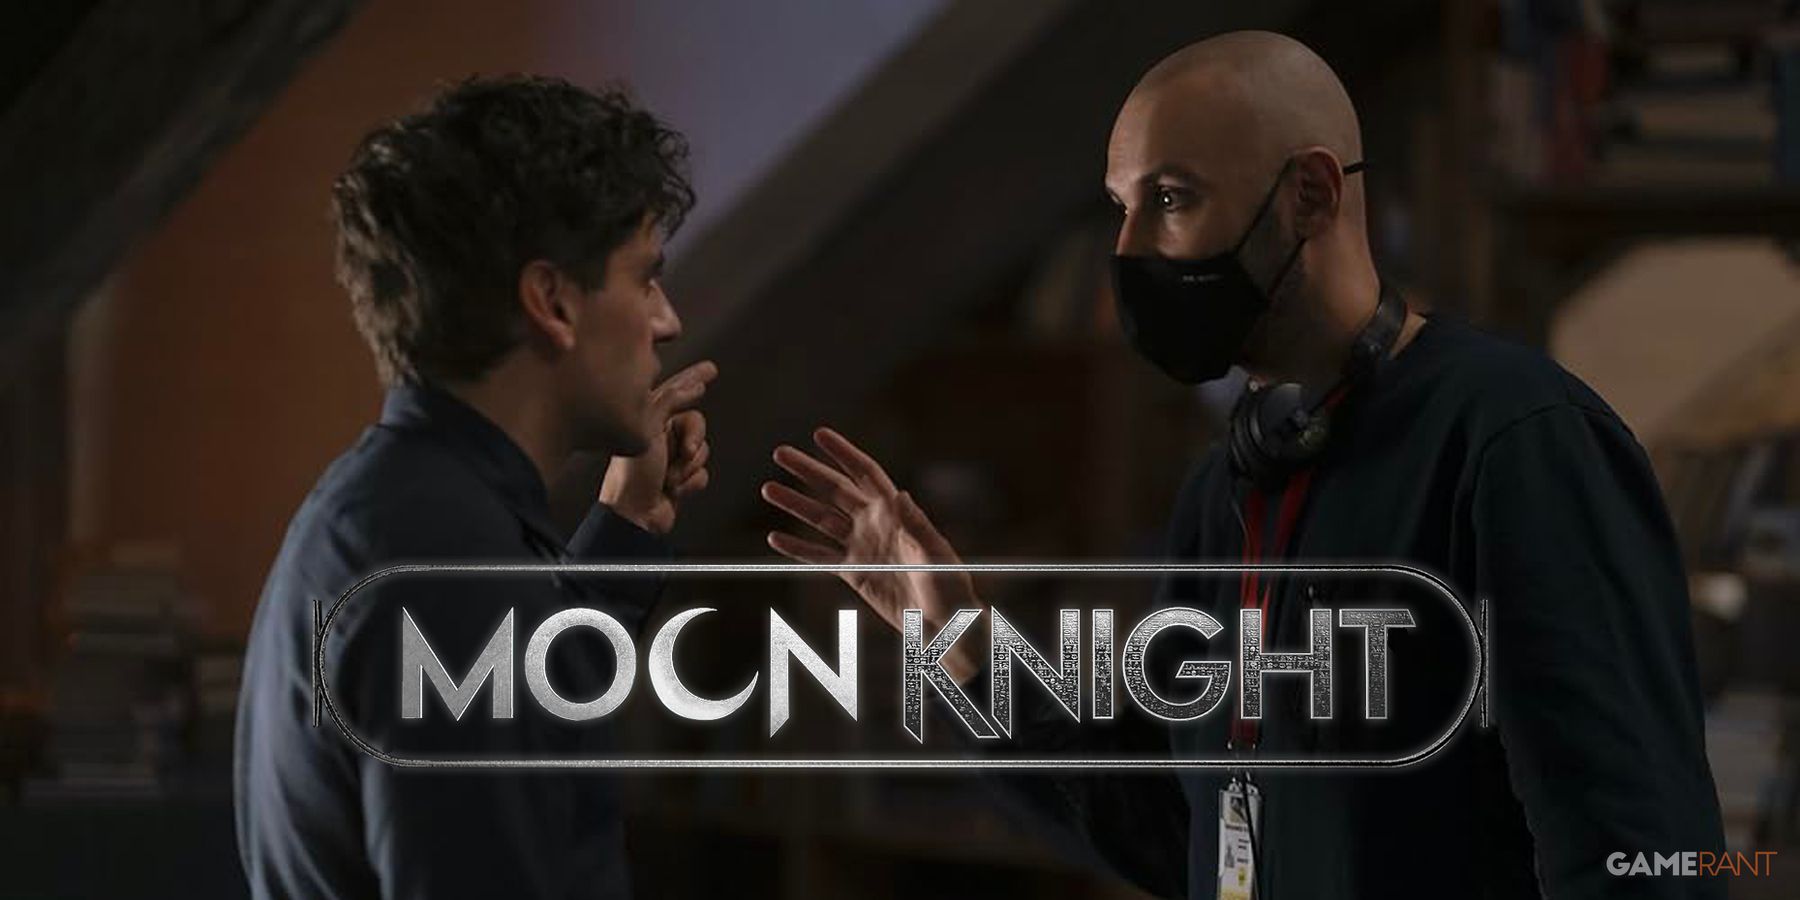 Moon Knight Season 2 Update